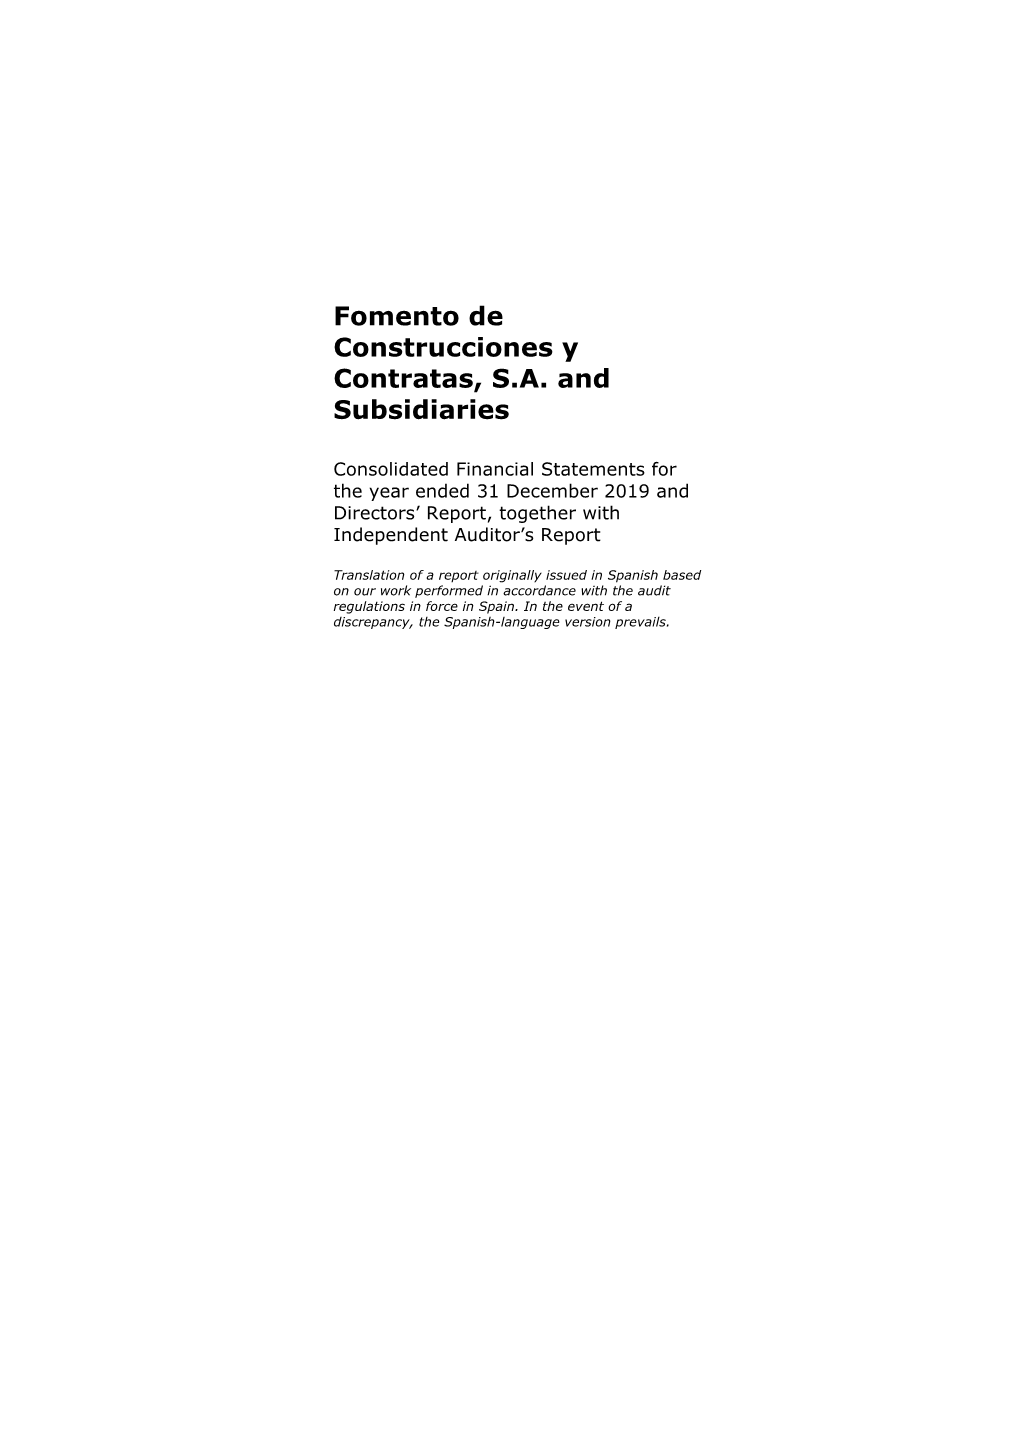 Fomento De Construcciones Y Contratas, S.A. and Subsidiaries